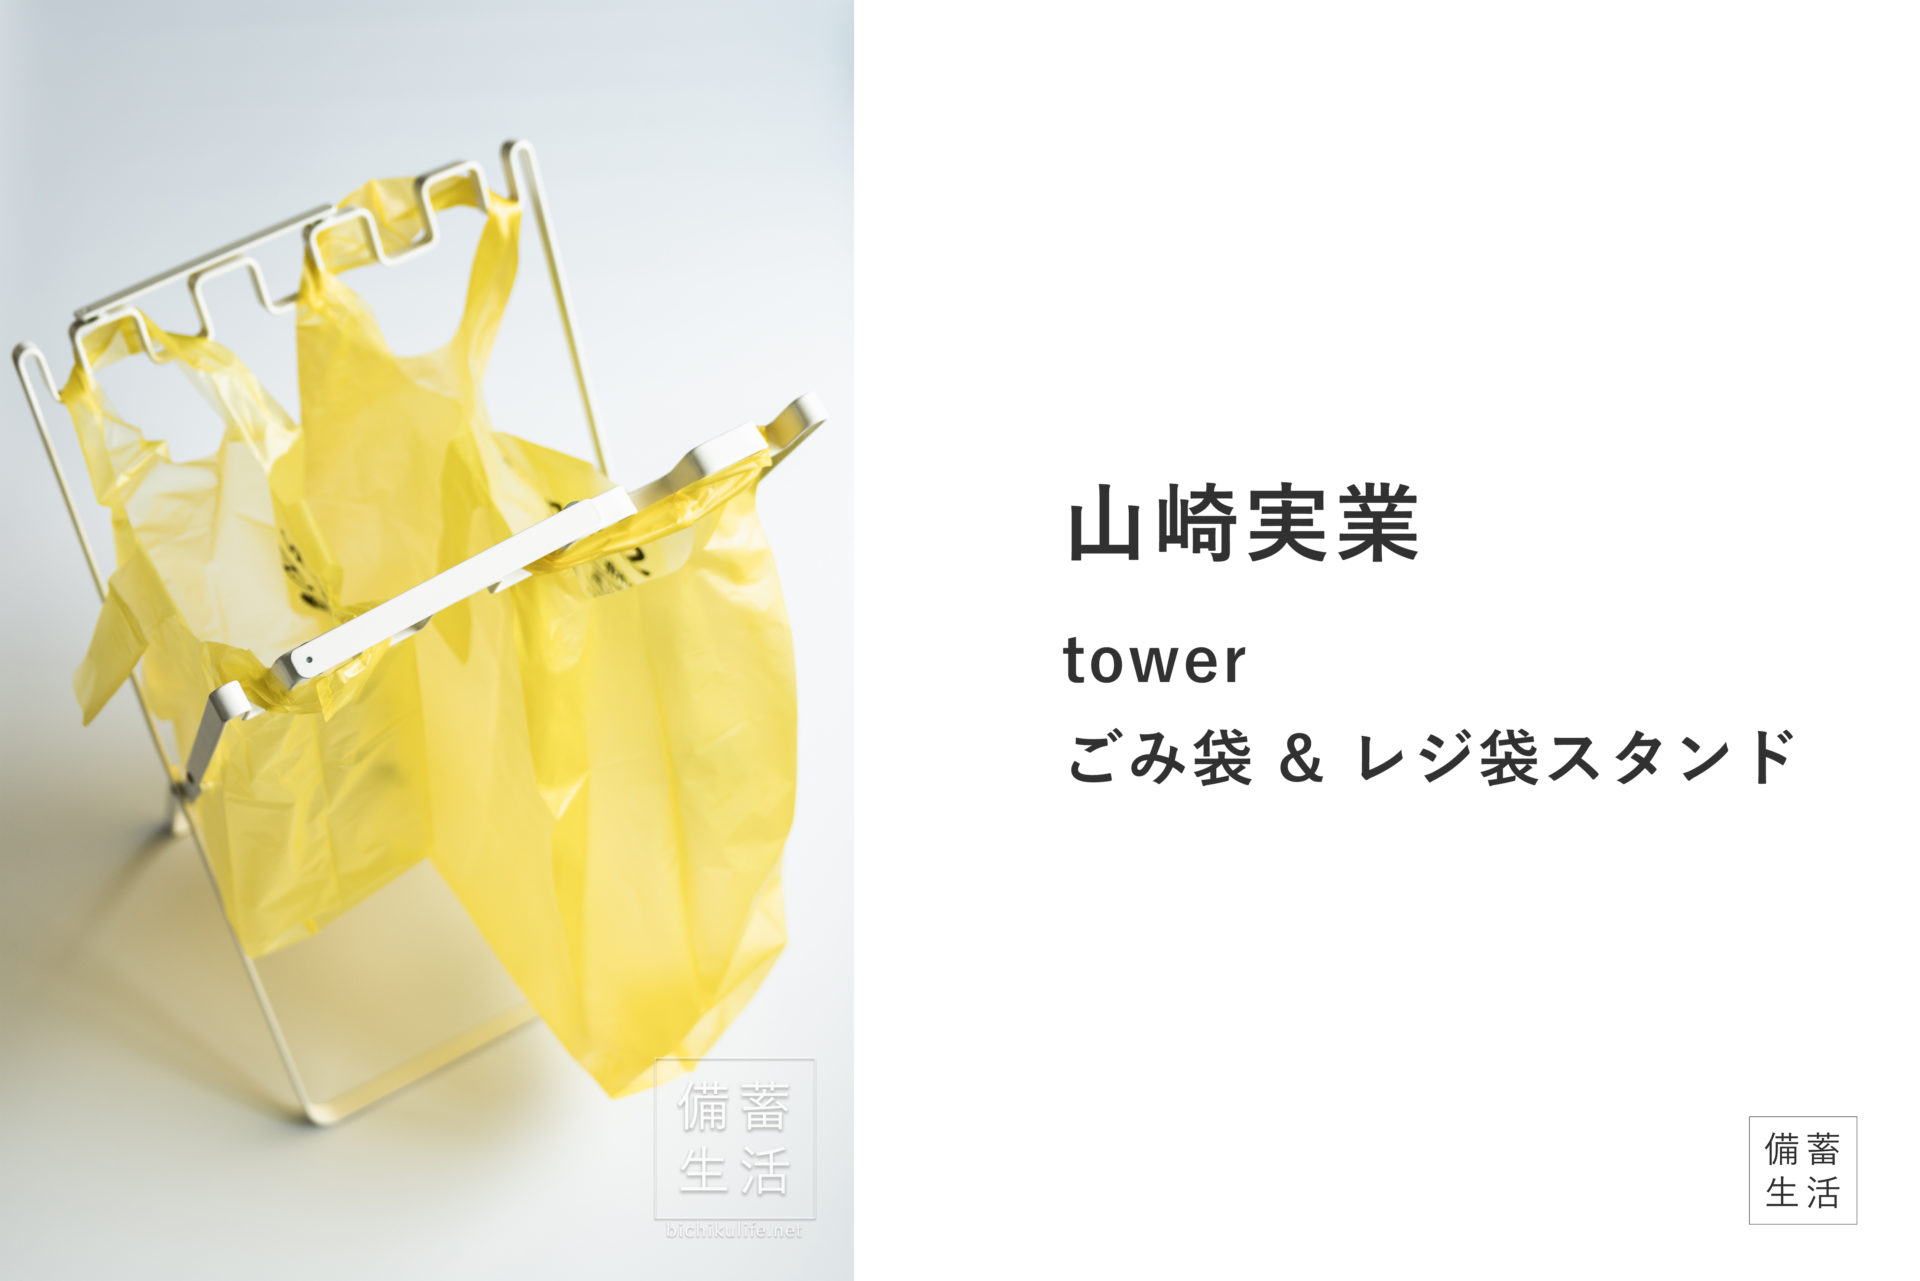 山崎実業 ごみ袋&レジ袋スタンド tower